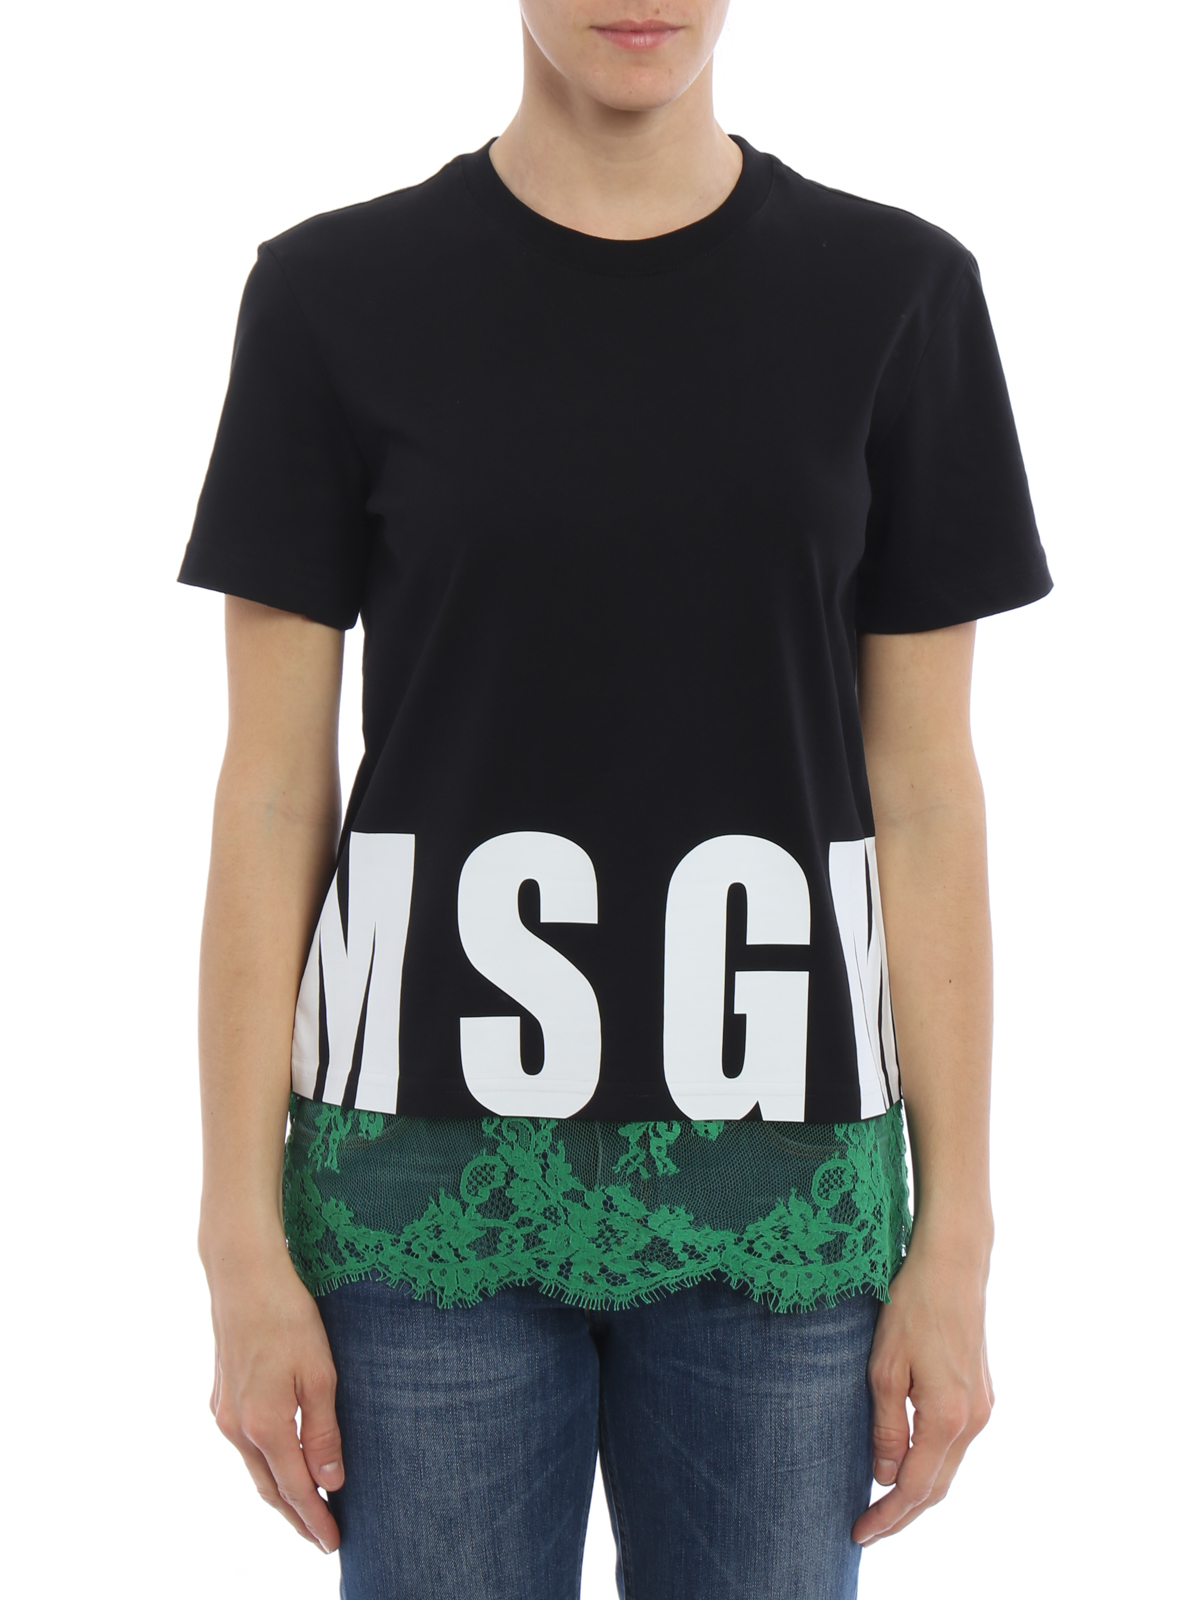 Femme Vêtements Tops T-shirts T-shirt Coton MSGM en coloris Noir 